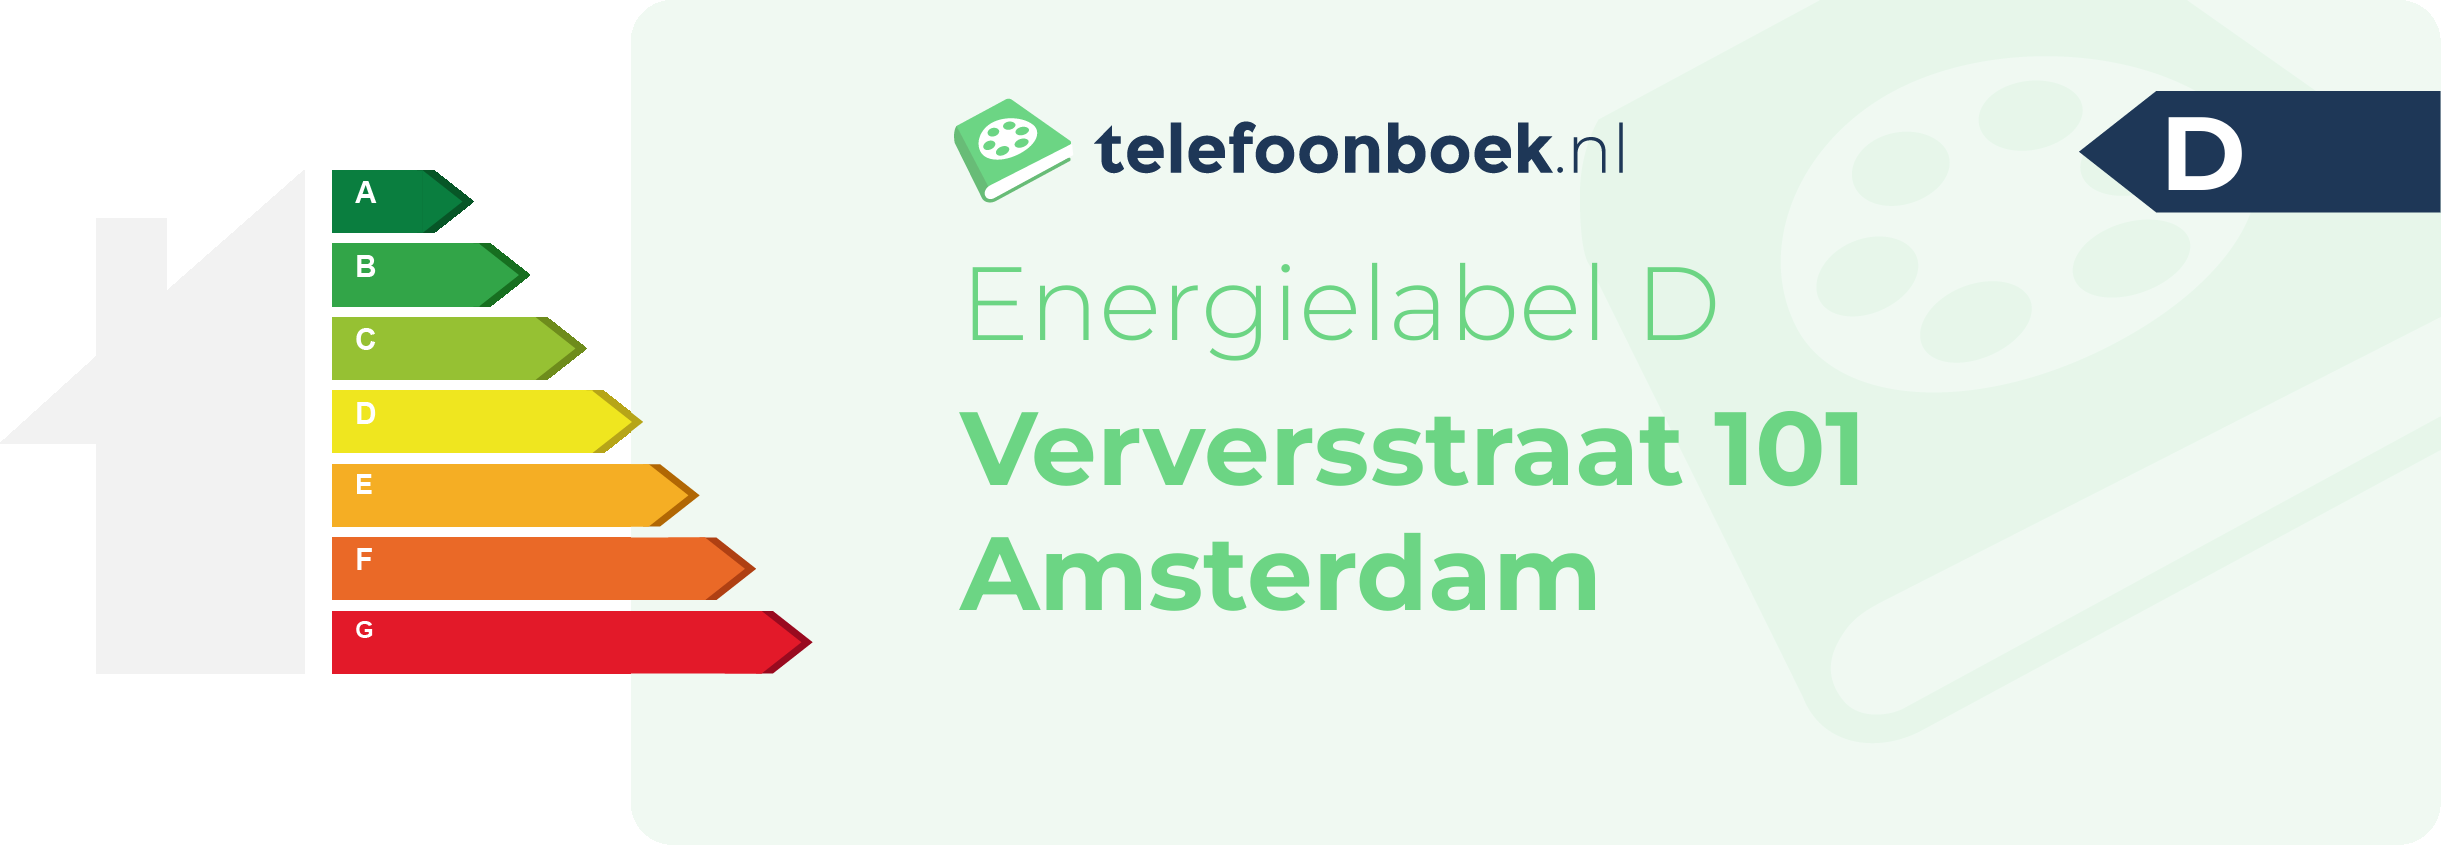 Energielabel Verversstraat 101 Amsterdam